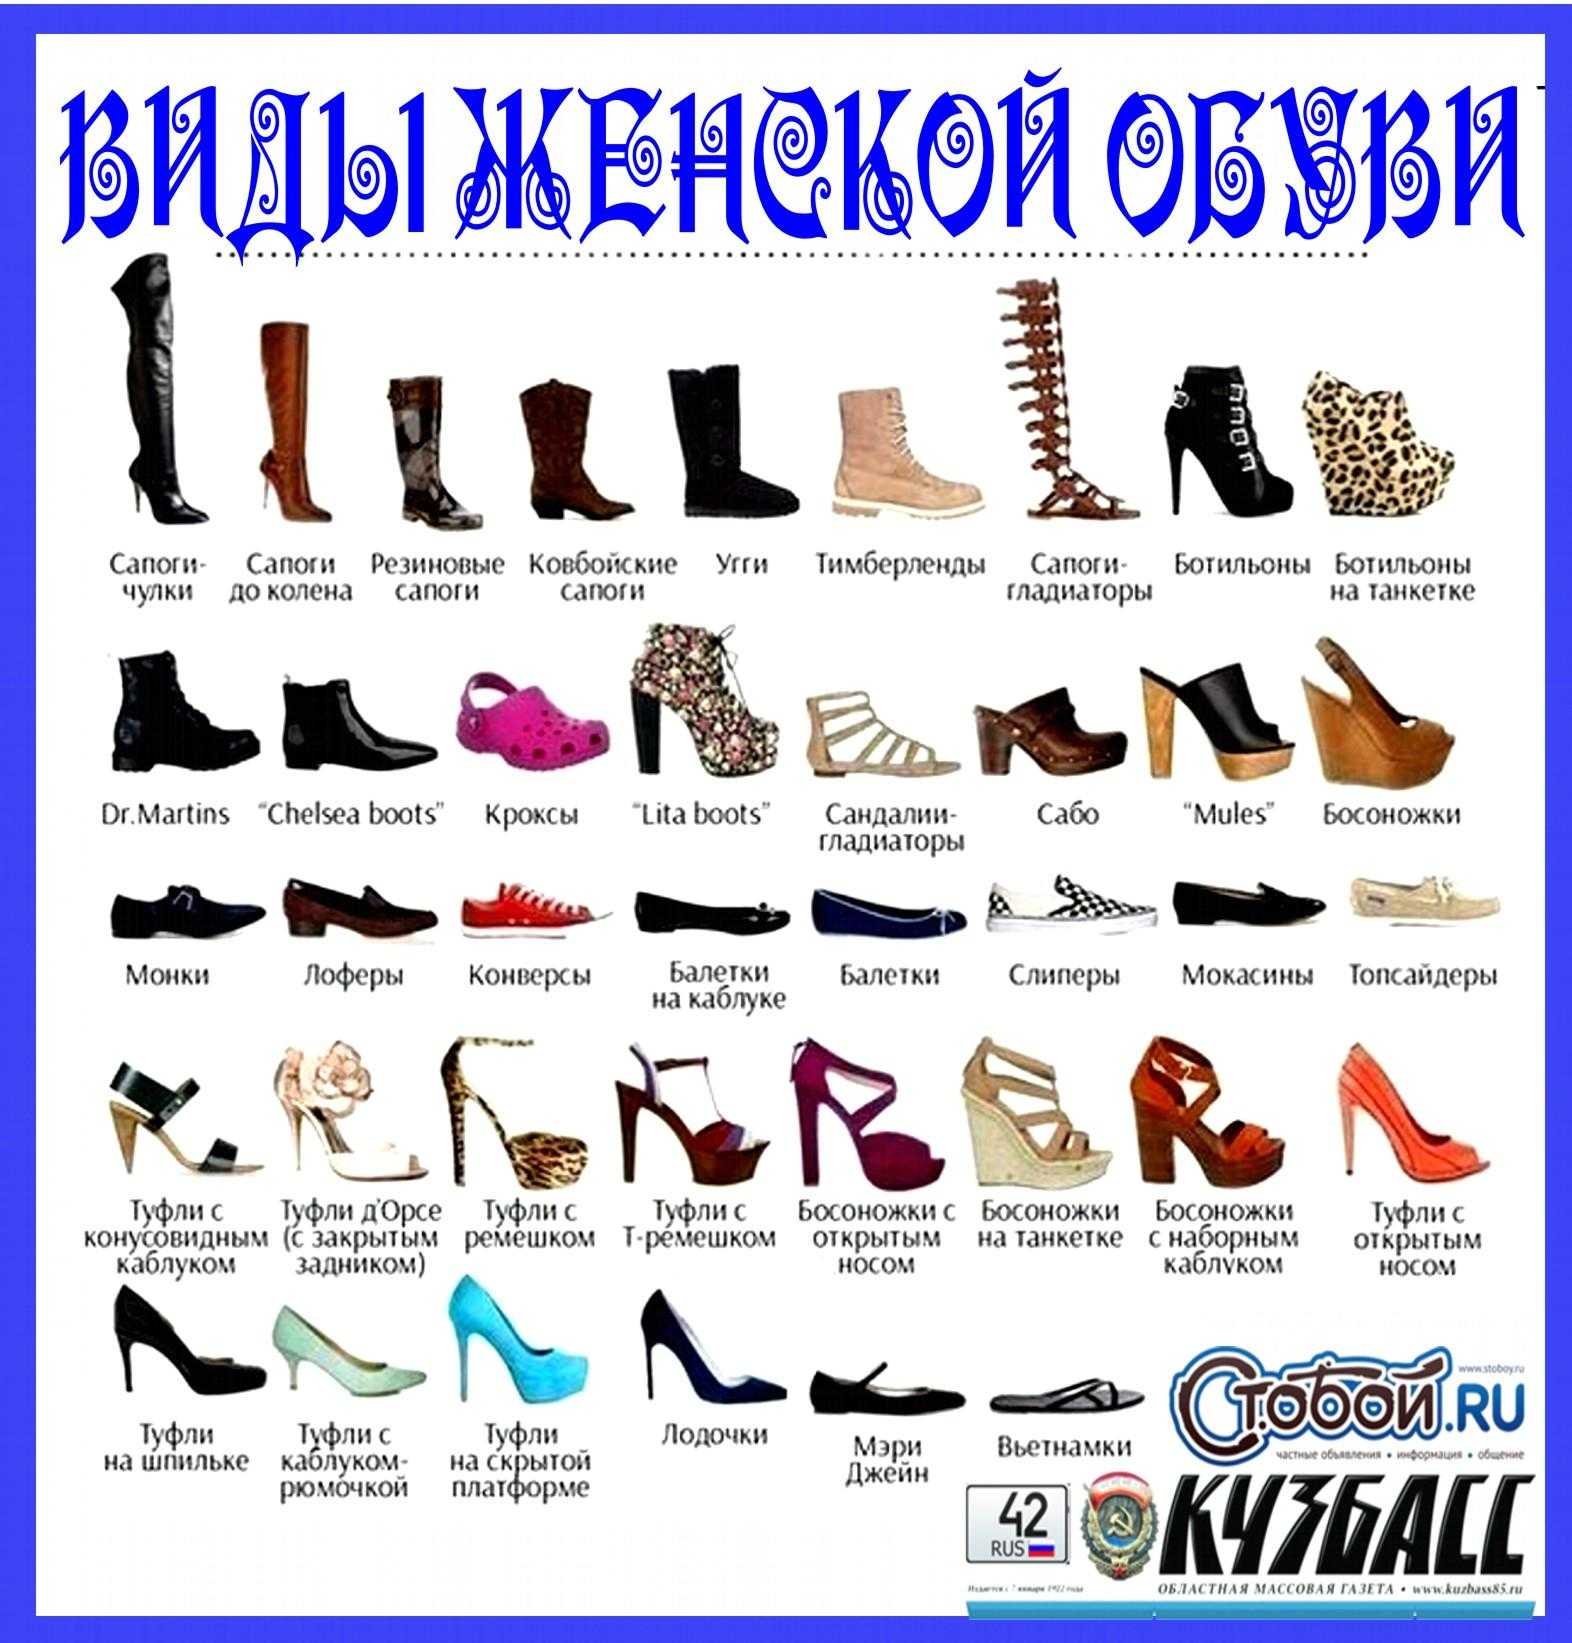 Все виды женской обуви